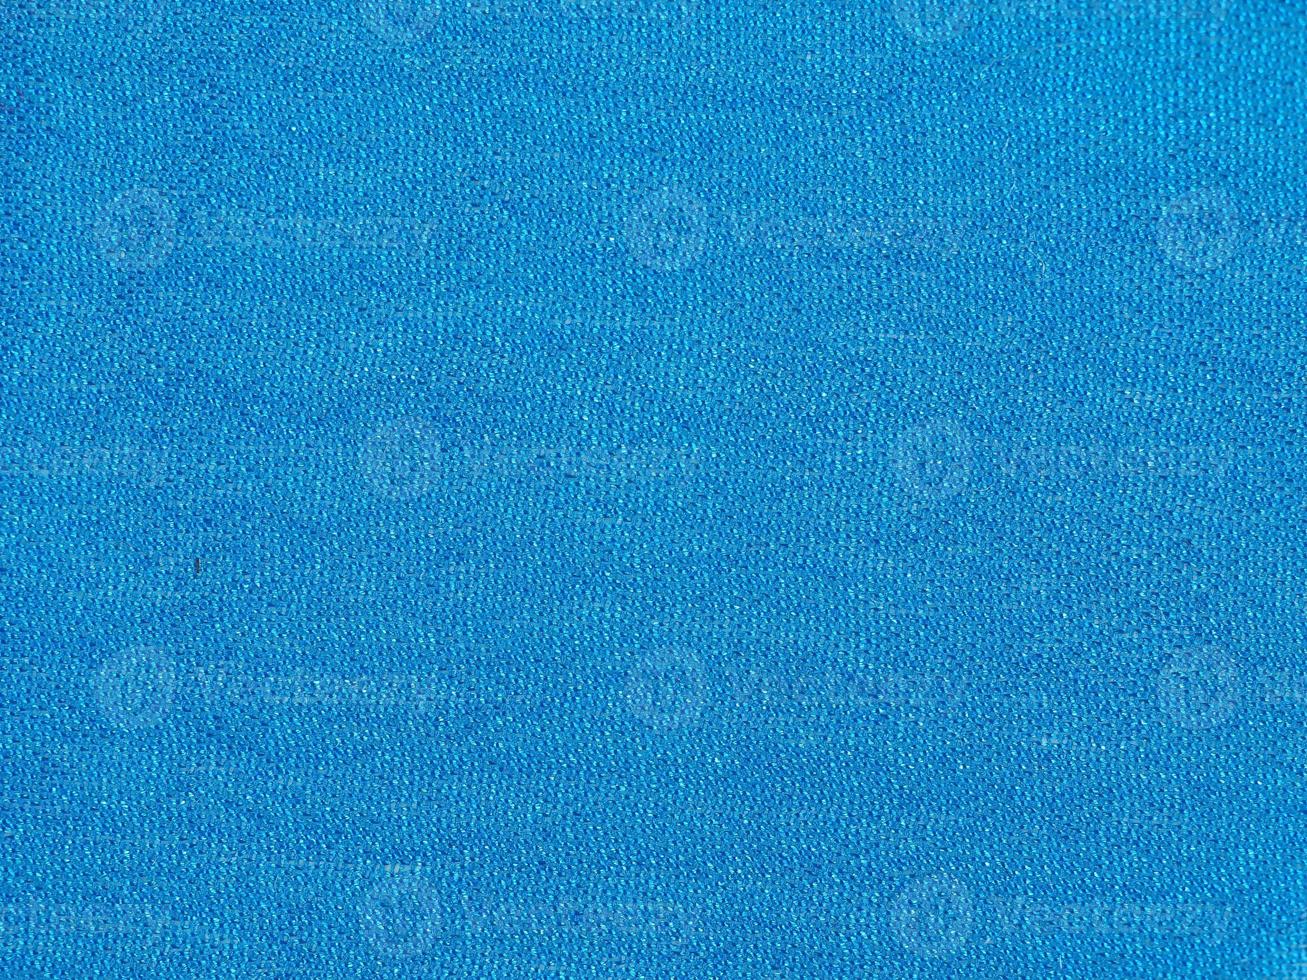 Blue fabric background photo